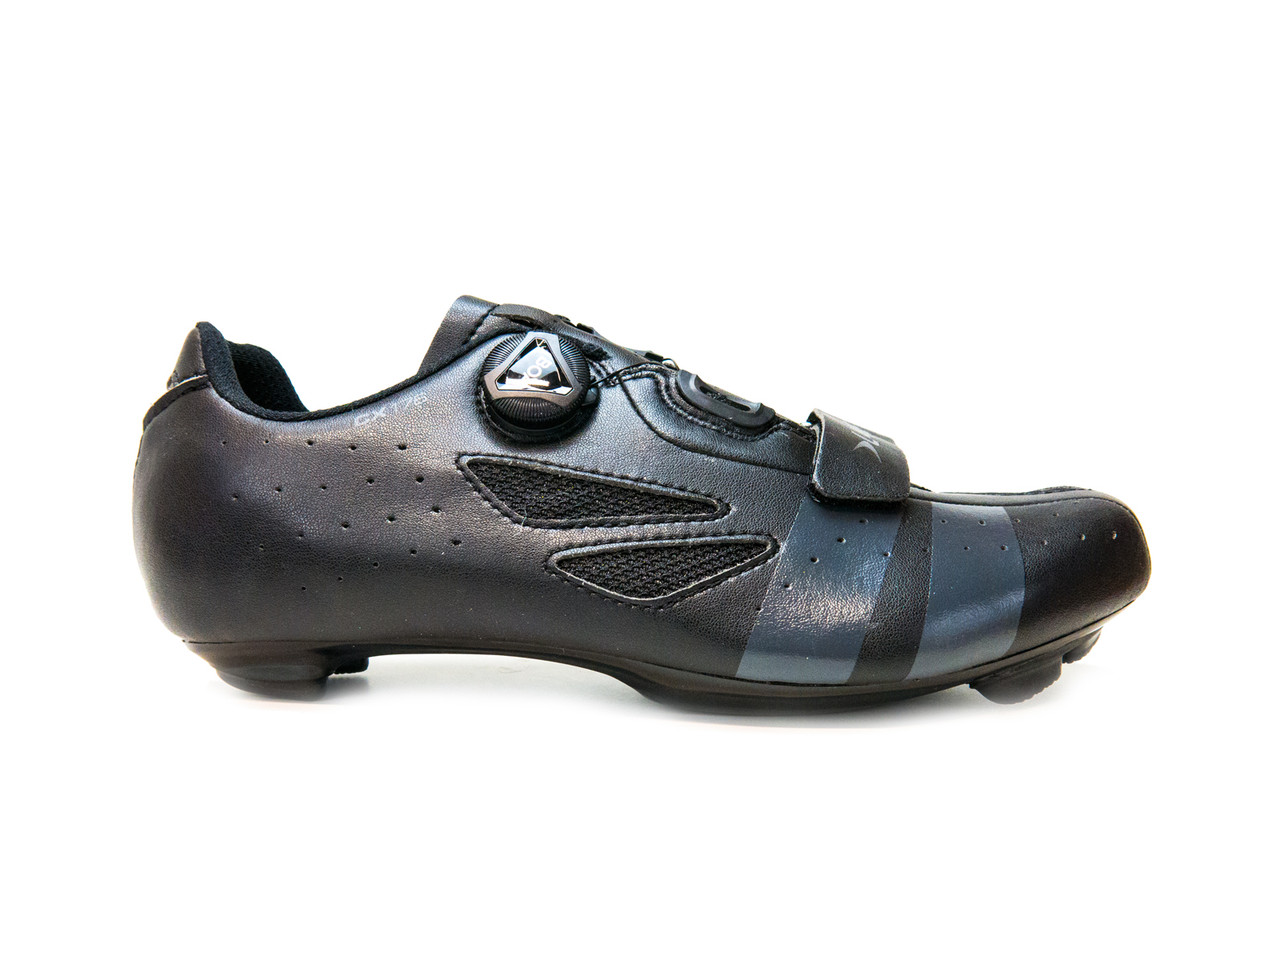 lake cx176 cycling shoes